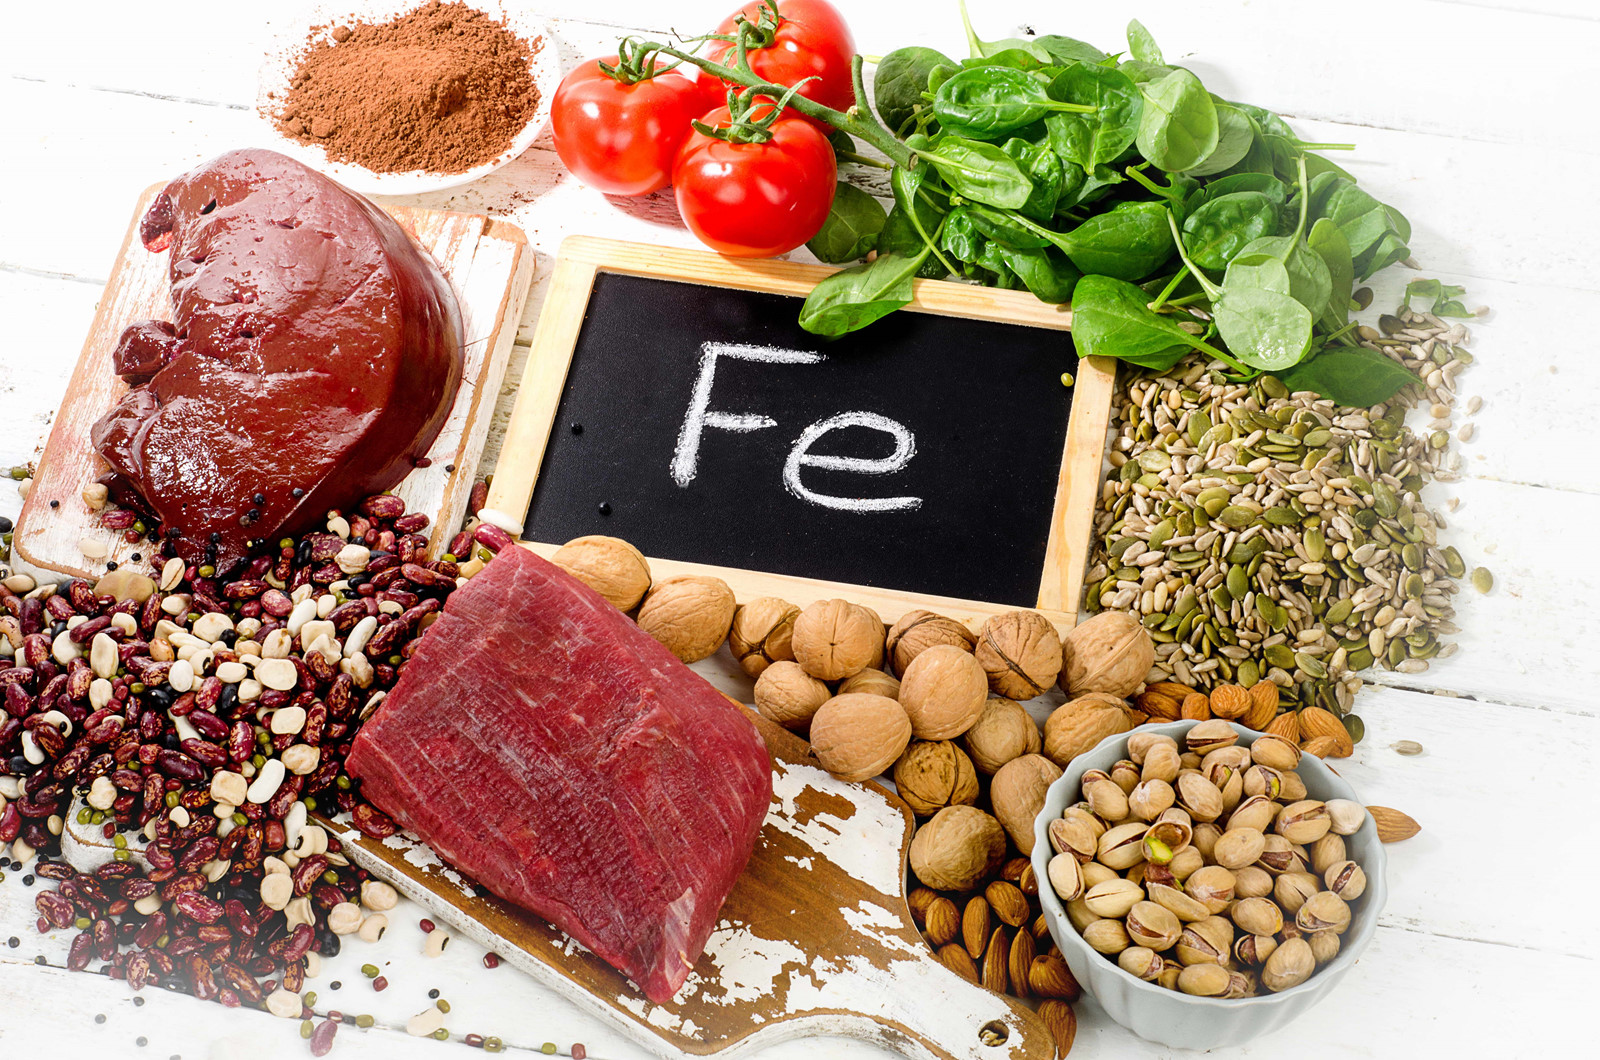 Ngoài thịt đỏ, còn có thực phẩm nào khác giúp bổ sung sắt cho cơ thể?
